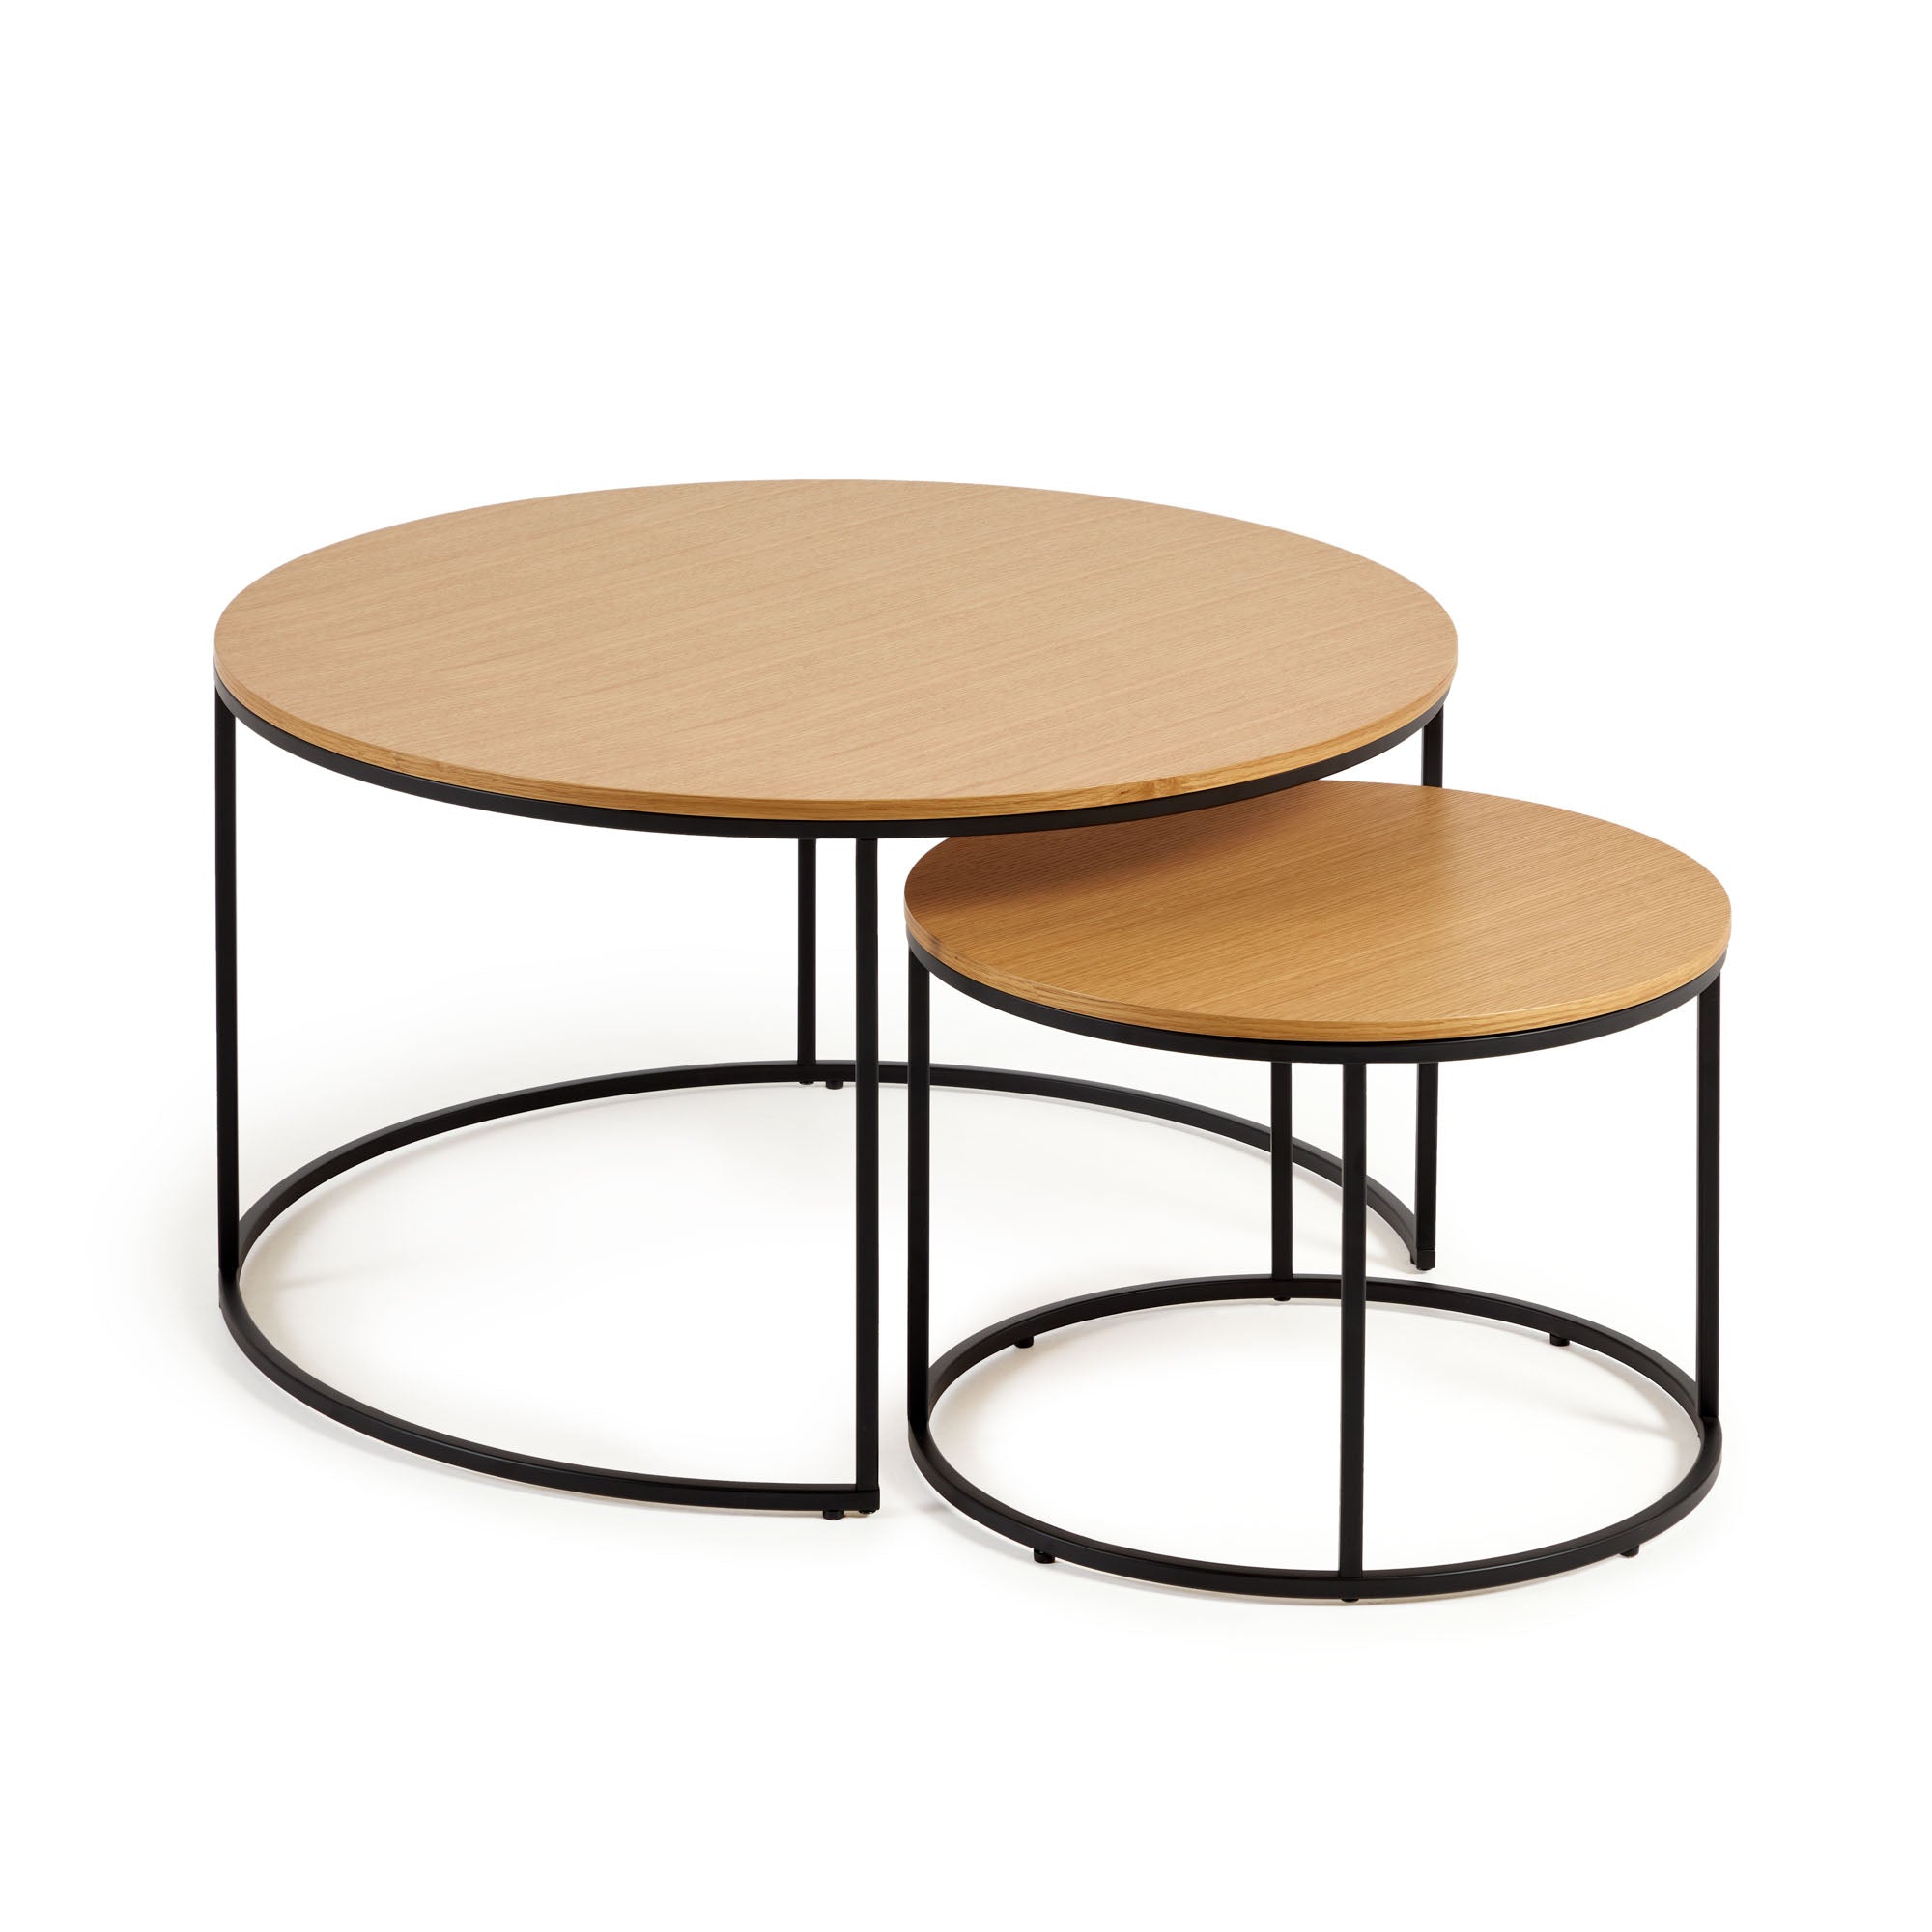 Yoana 2 db kisasztal, tölgyfa furnérral és fekete fémmel, Ø 80 cm / Ø 50 cm